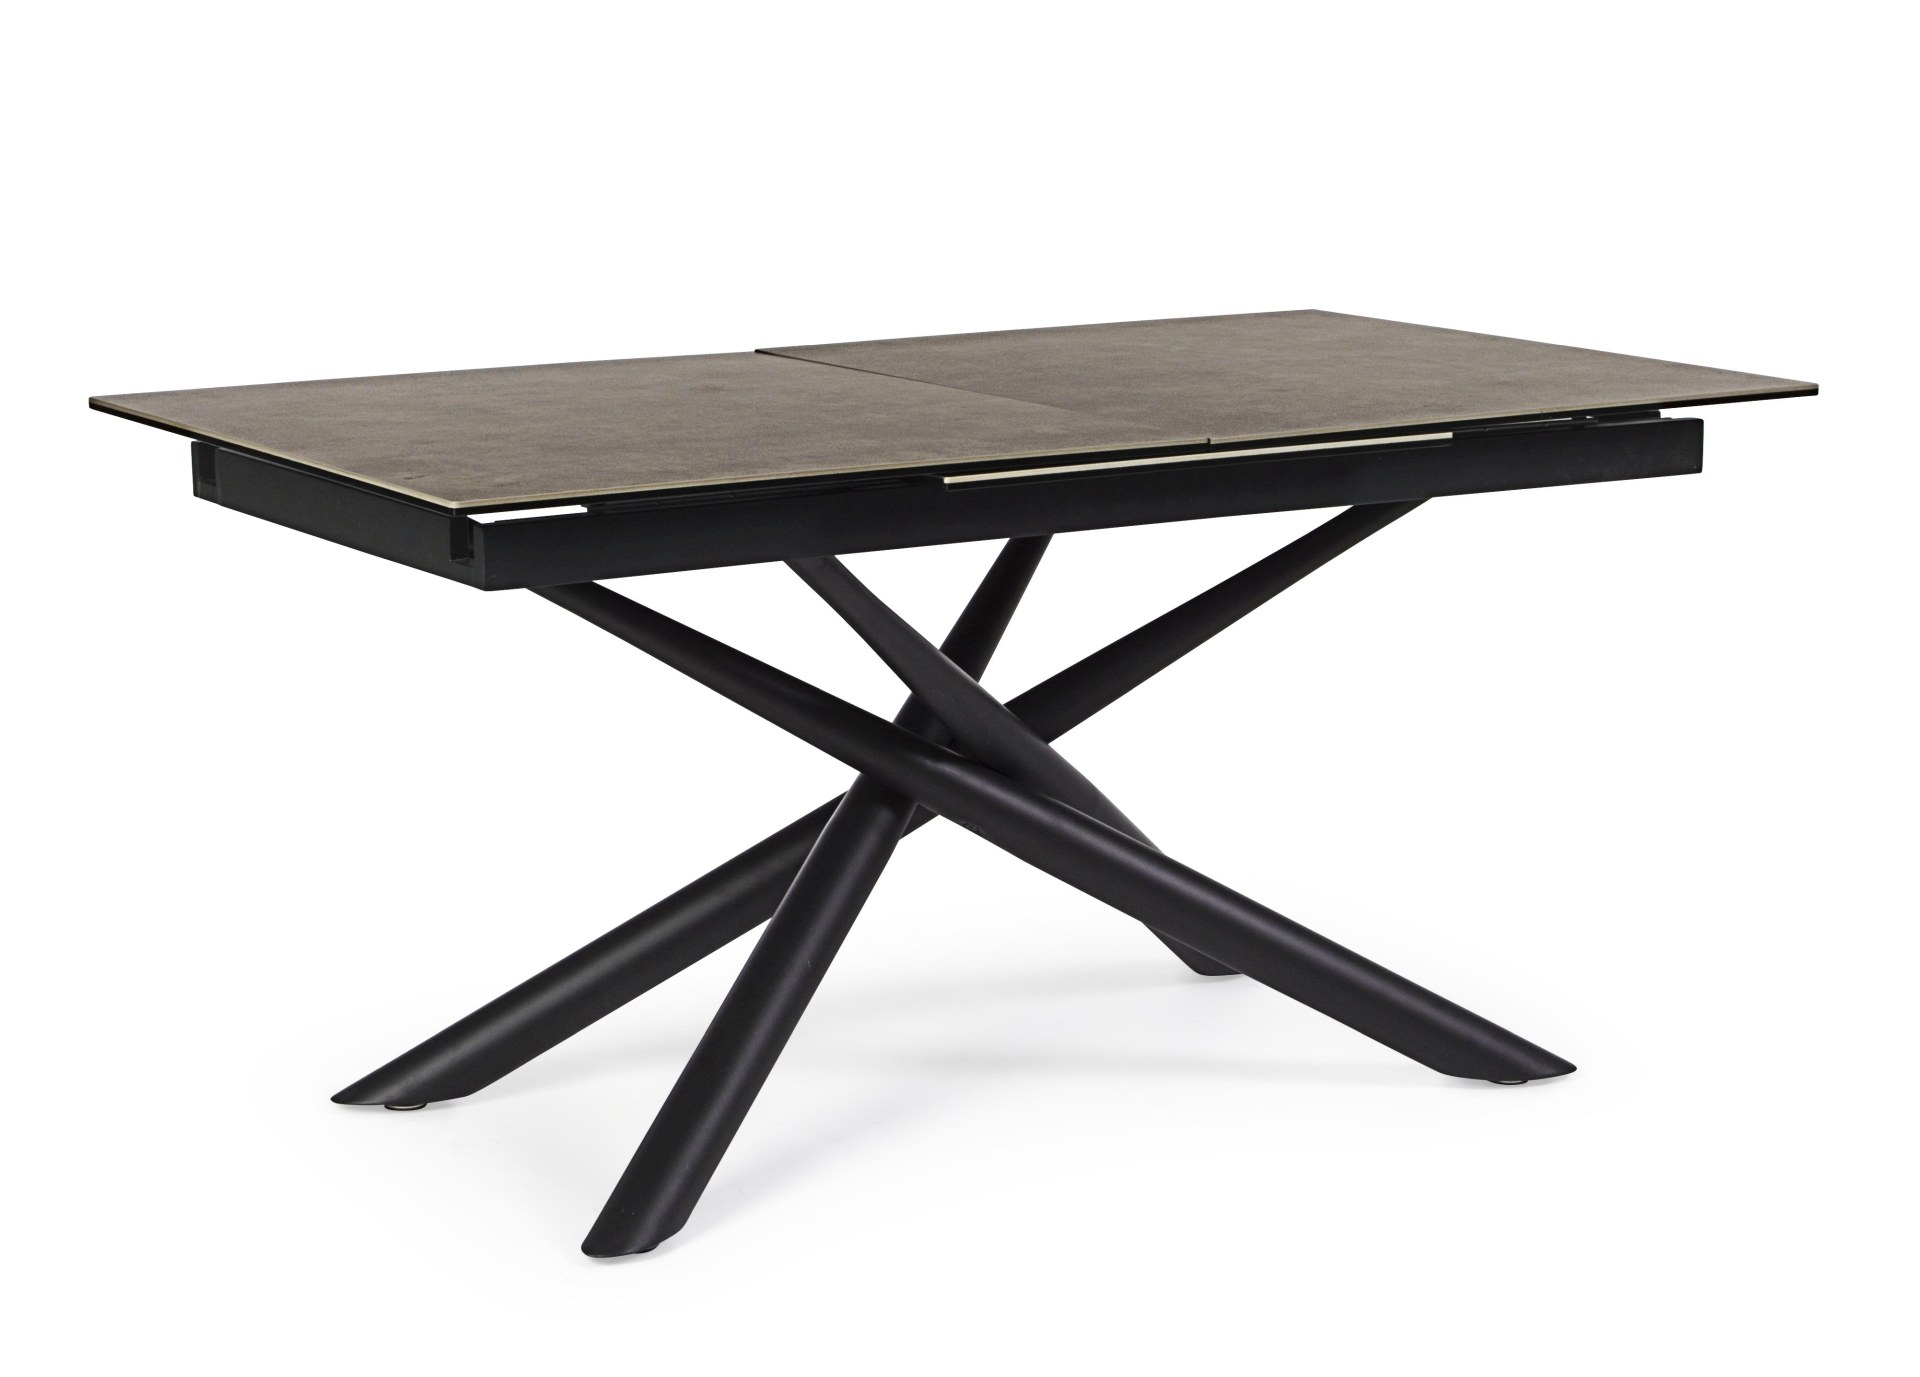 Der Esstisch Seyfert überzeugt mit seinem moderndem Design. Gefertigt wurde er aus Keramik, welches einen braunen Farbton besitzt. Das Gestell des Tisches ist aus Metall und ist in eine schwarze Farbe. Der Tisch ist ausziehbar von 160 cm auf 220 cm.